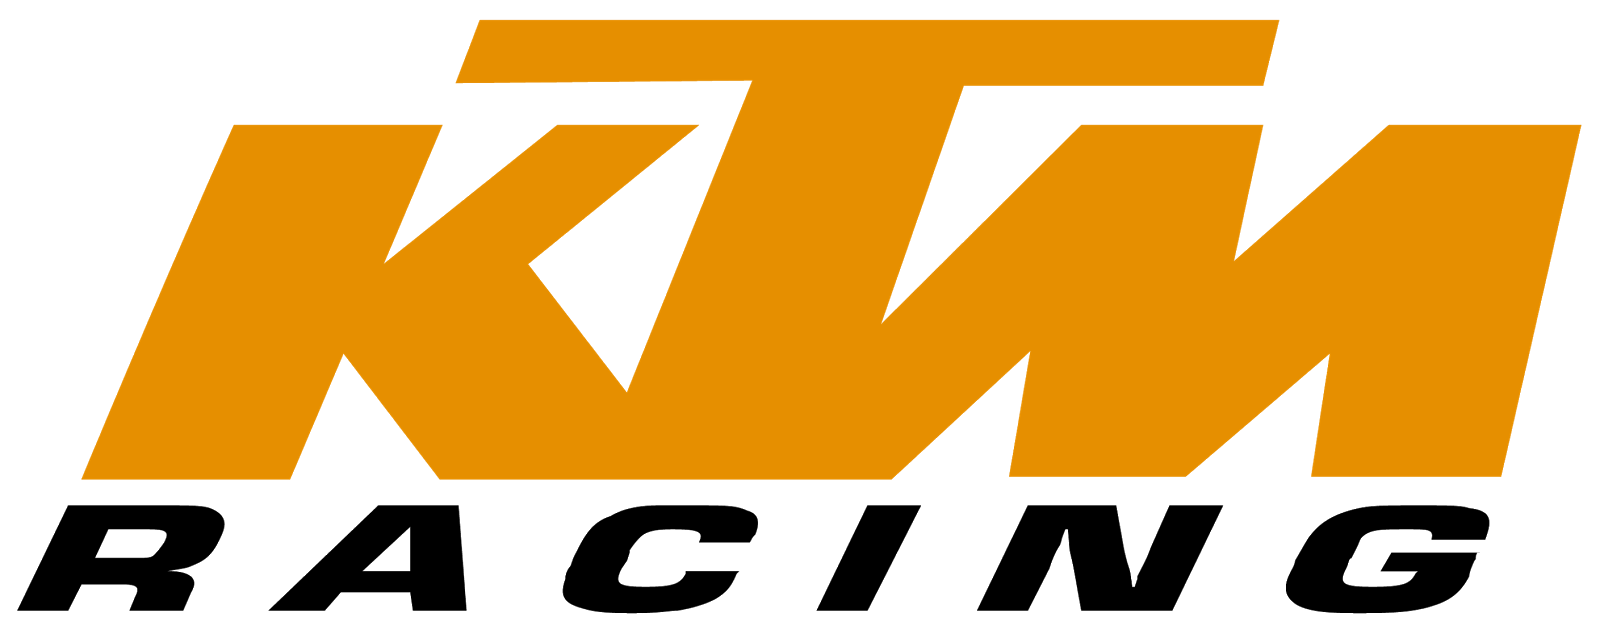 KTM PNG HD Quality